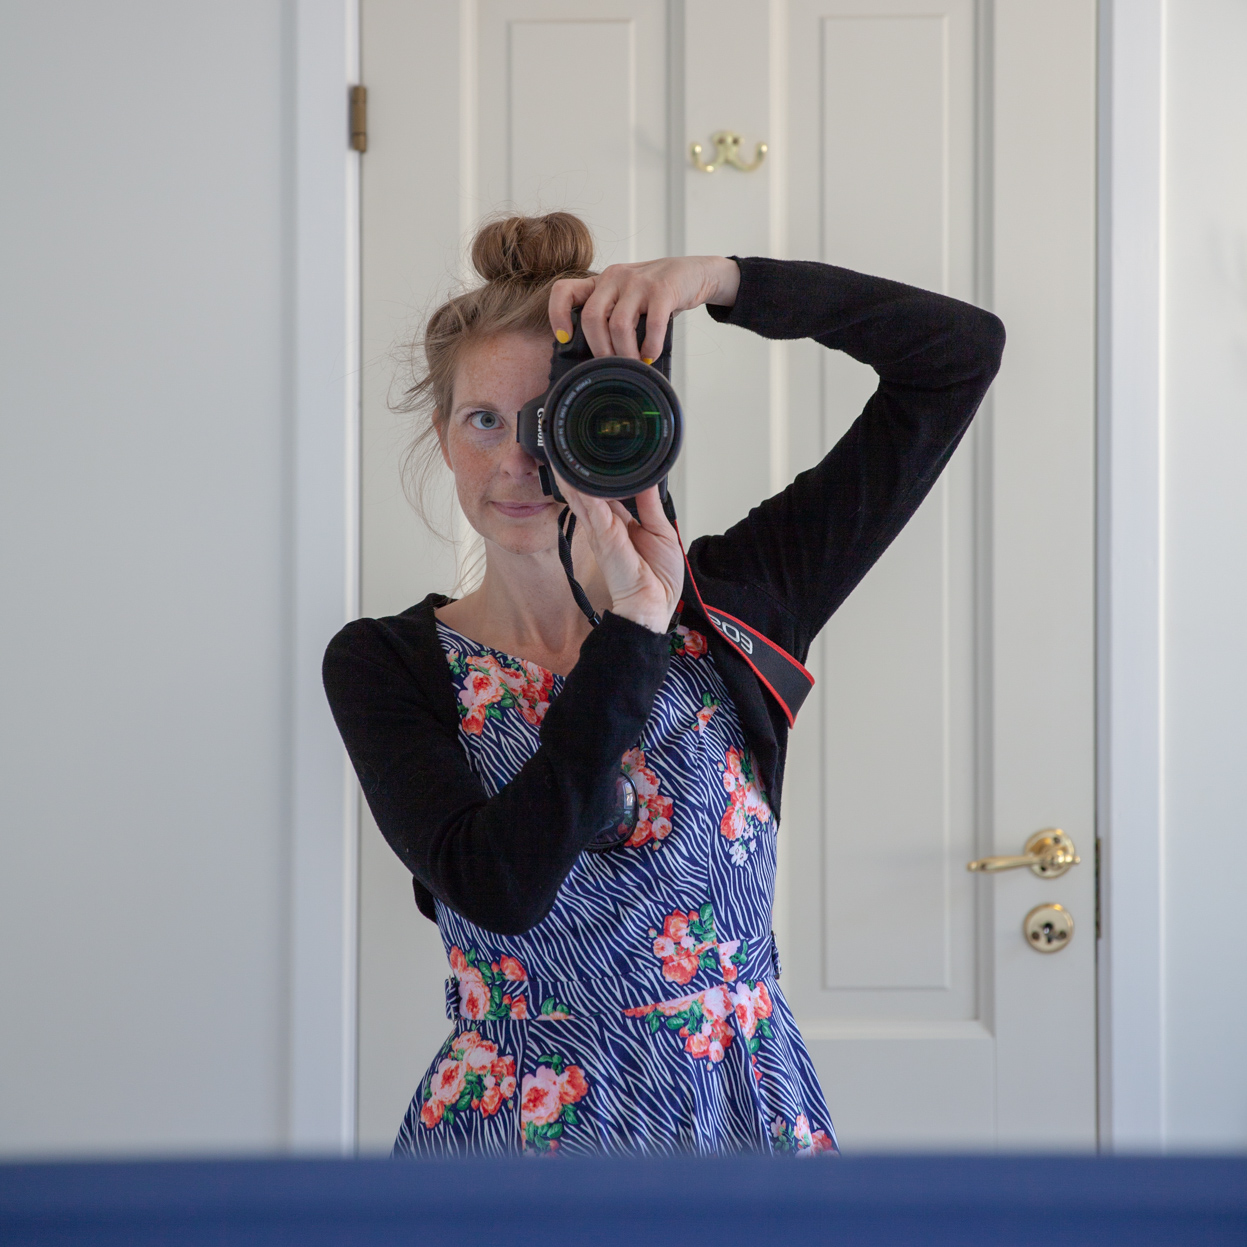 Selvportrett av Fotograf Linn Landmark som fotograferer seg selv mot et speil. Hun har donut i håret, sort bolero og blå blomstrete kjole. Hvit vegg og hvit dør i bakgrunnen.